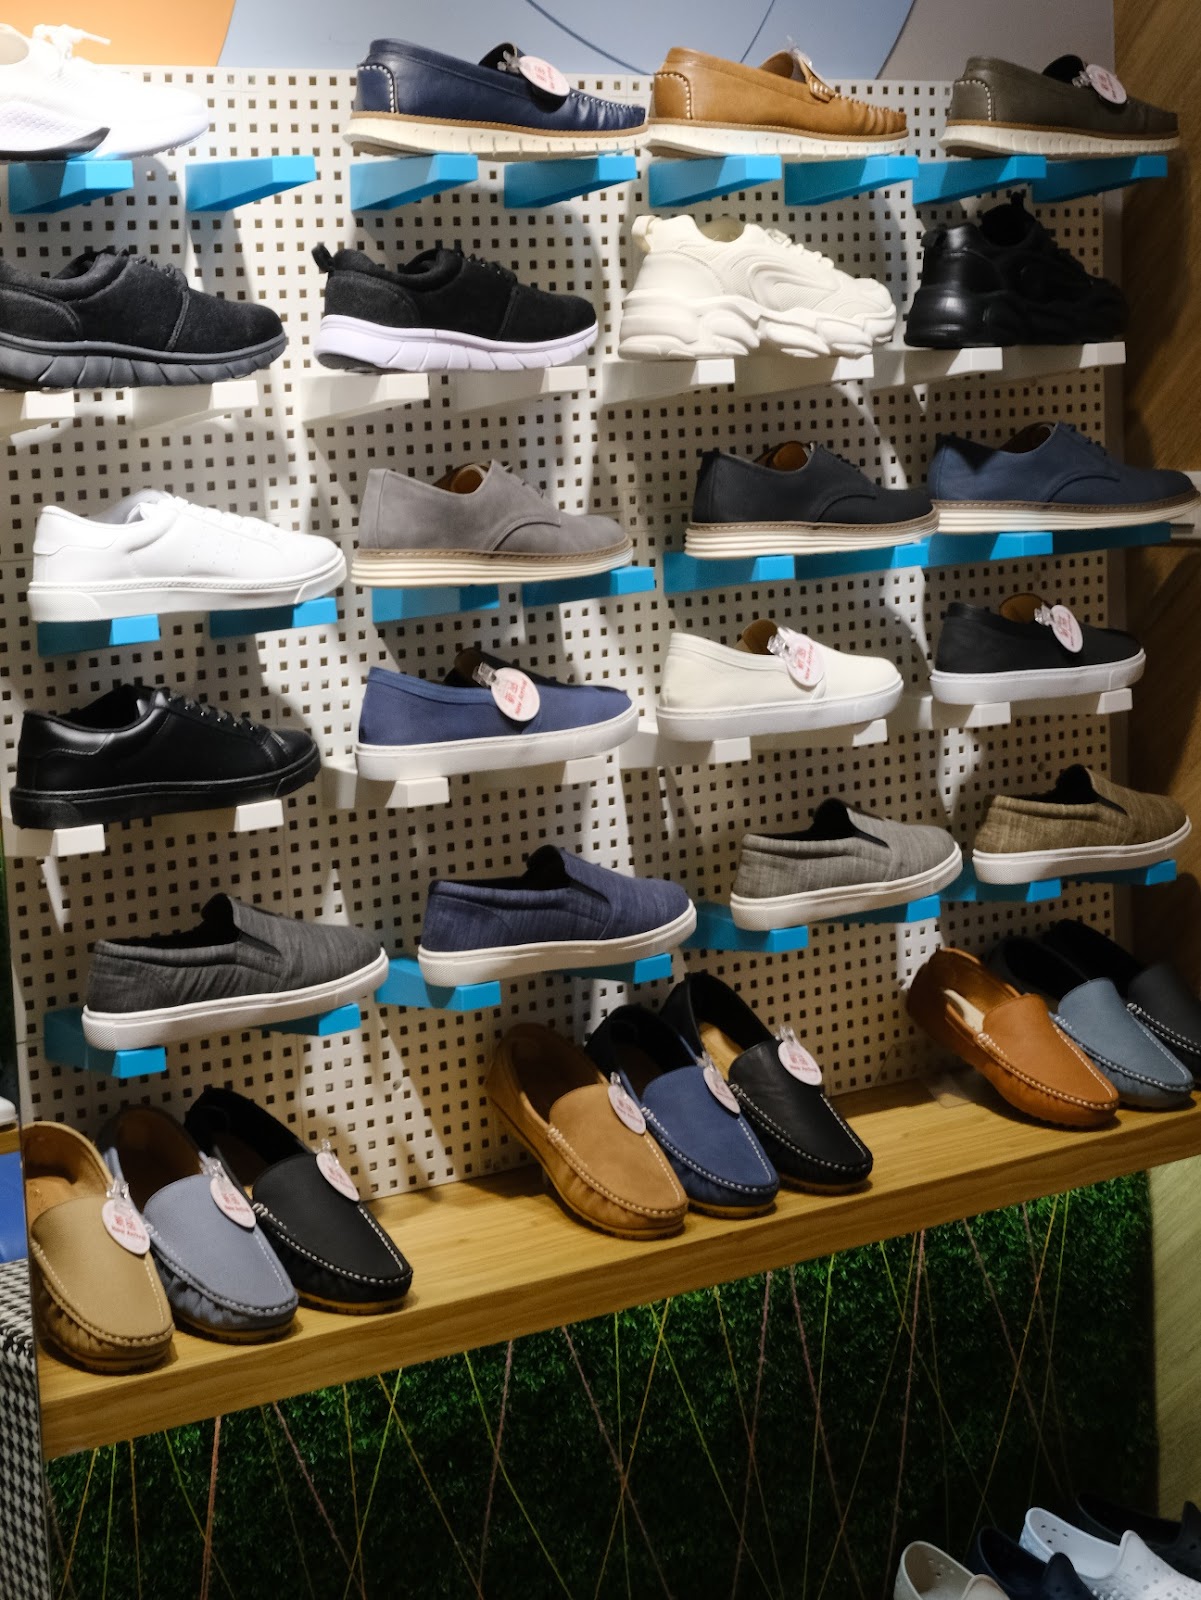 Fun Shop 富發牌-九份店 MIT製多種平價鞋款/雨天必穿鞋款/特色款貓咪懶人鞋/童鞋/休閒鞋分享！